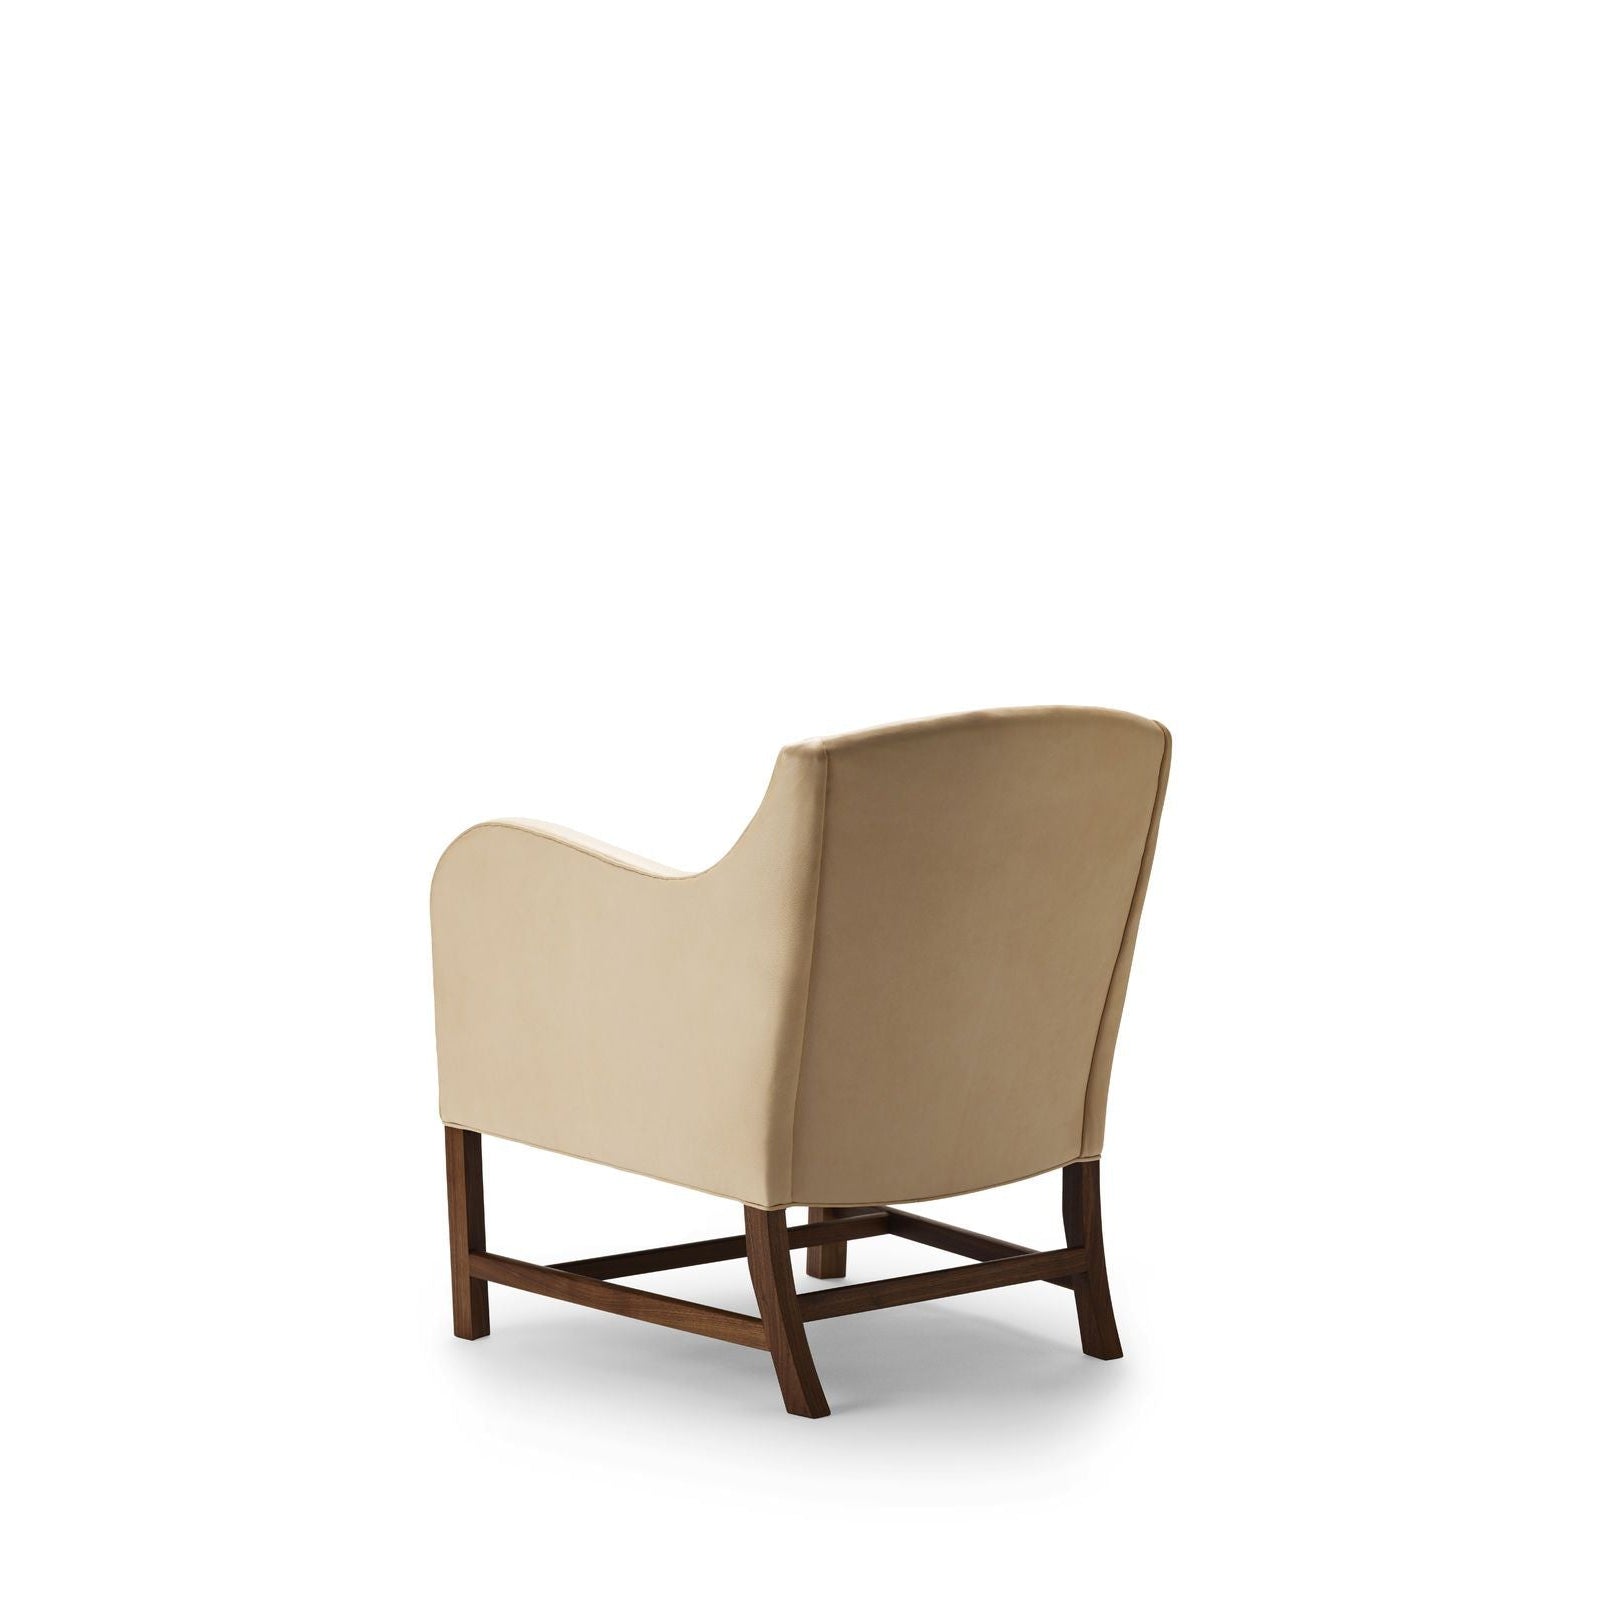 Carl Hansen KK43960 Mix Cadeira oleado Walnut/Goat Nature Leather